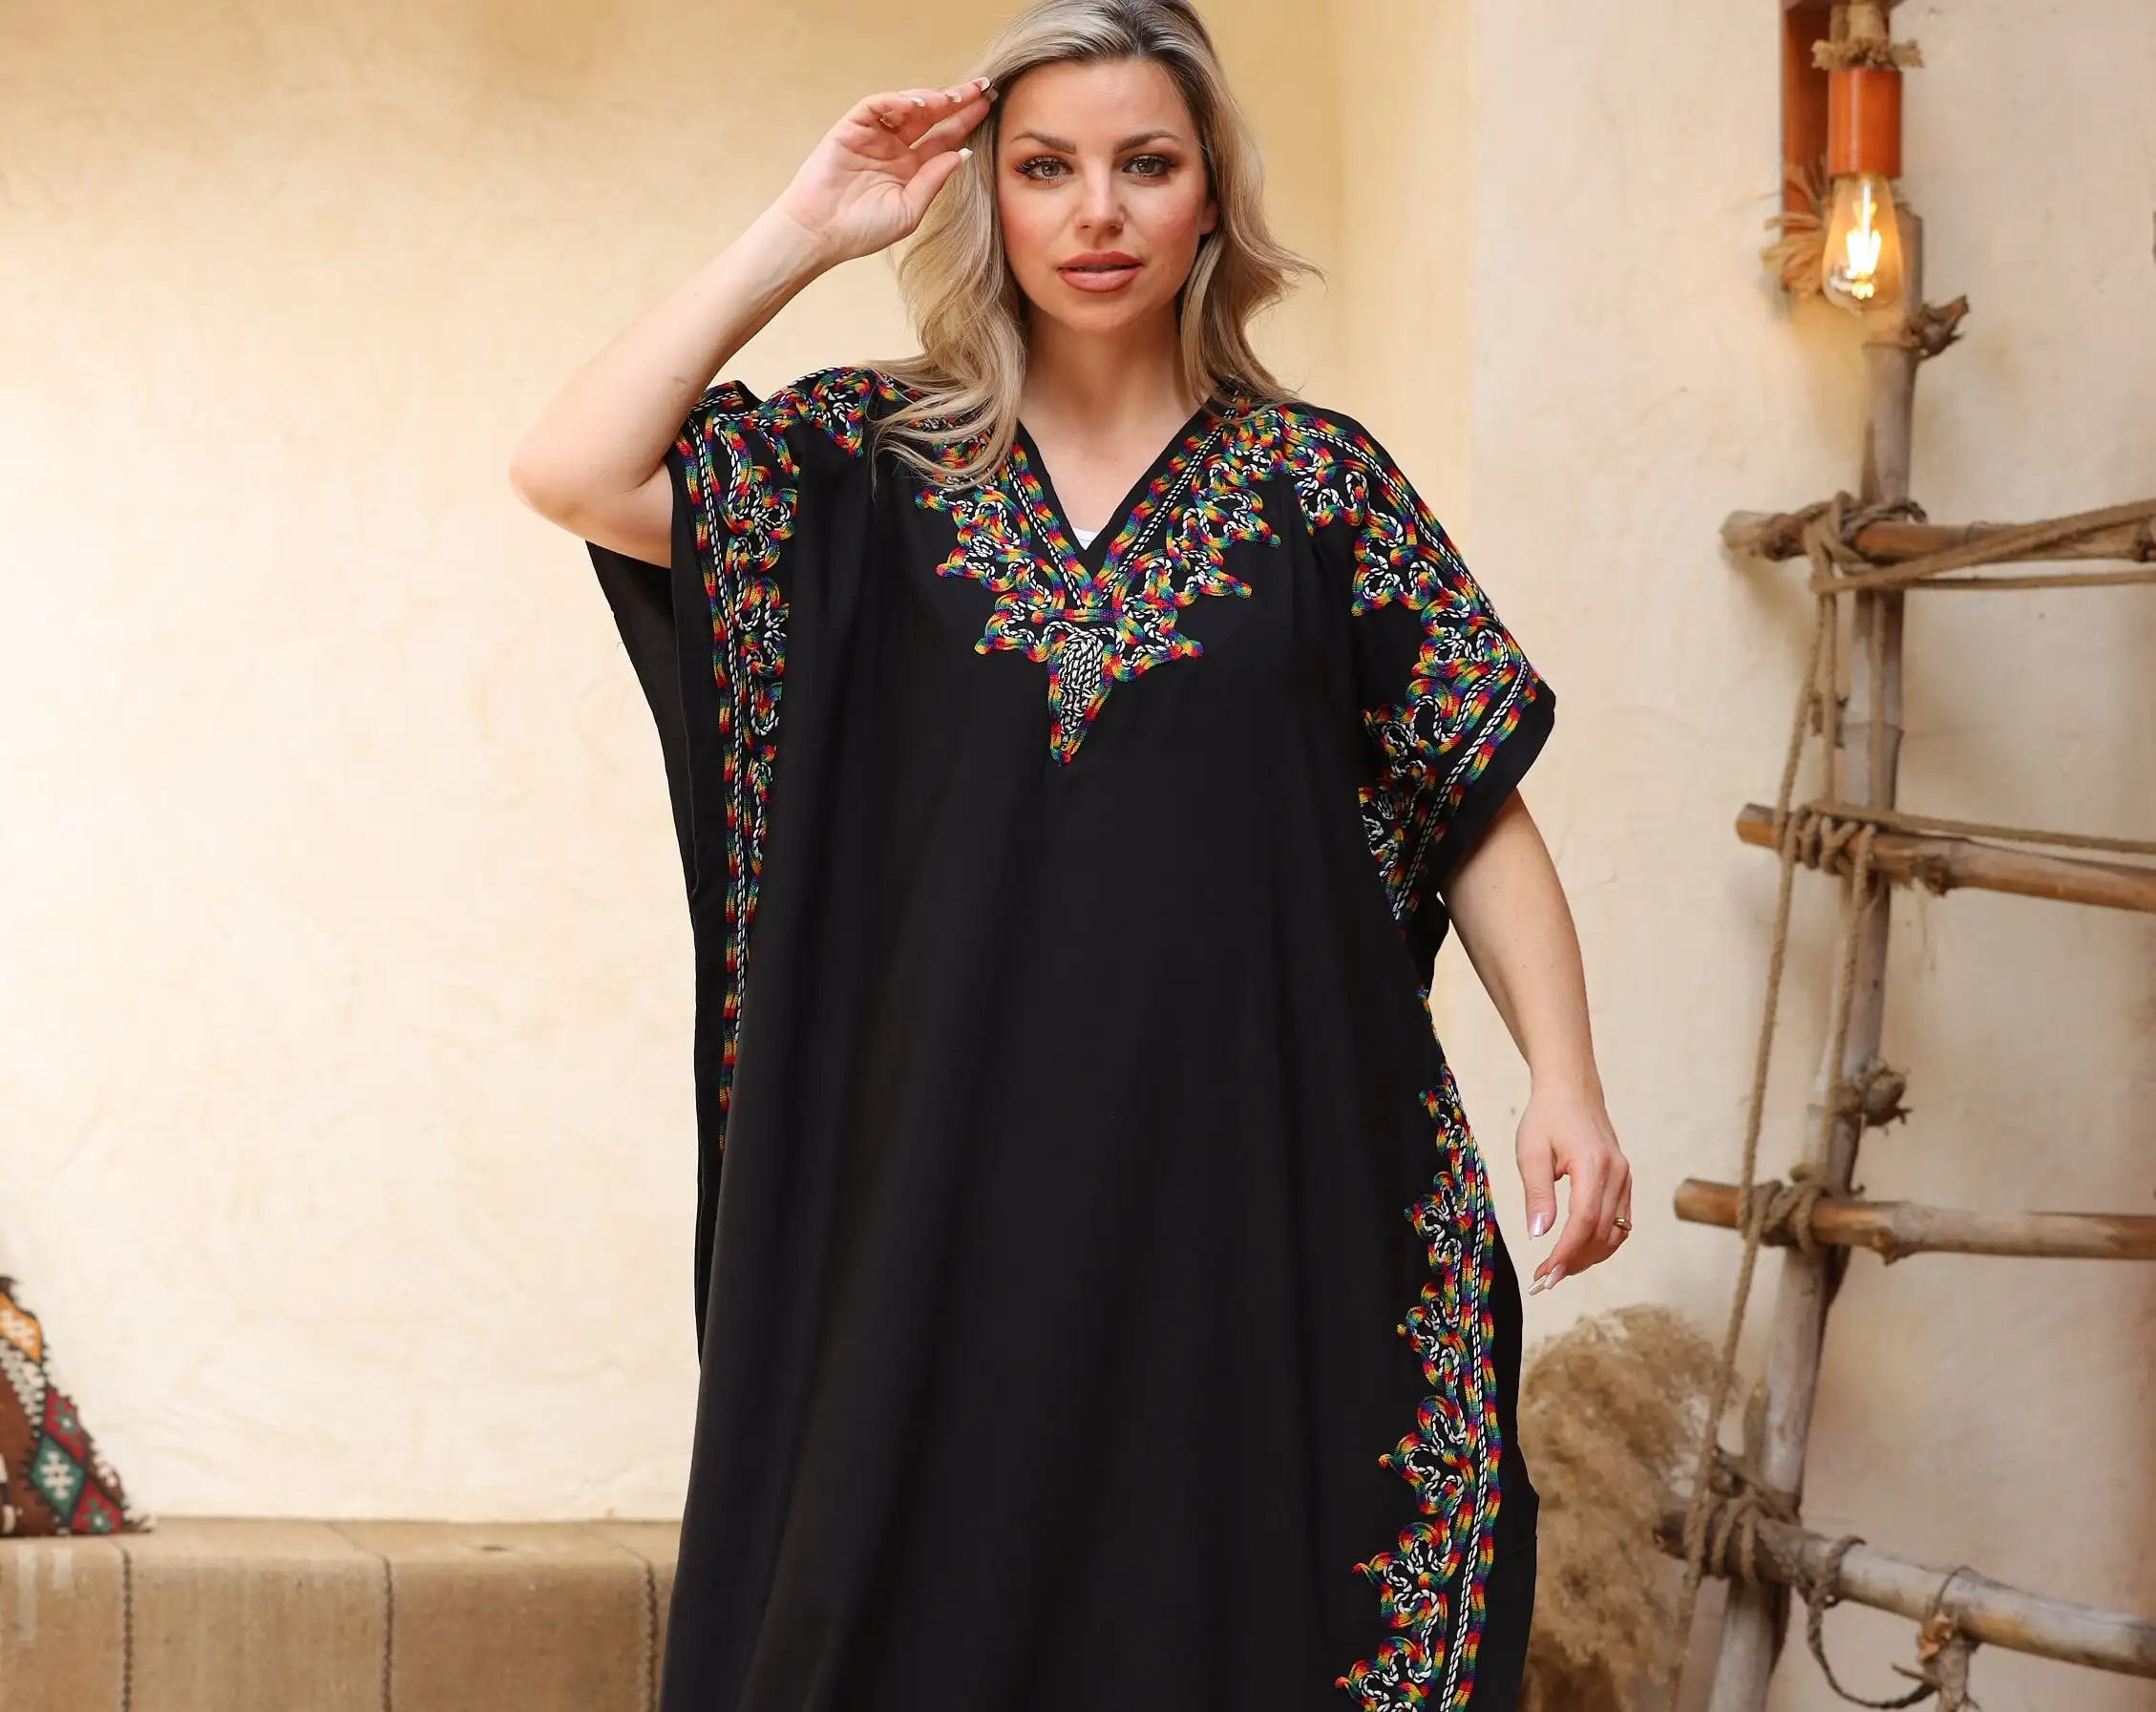 Индивидуальные оптовые 100% льняные хлопчатобумажные длинные платья женские мусульманские платья на заказ открытые абайские женские мусульманские платья фабричного производства